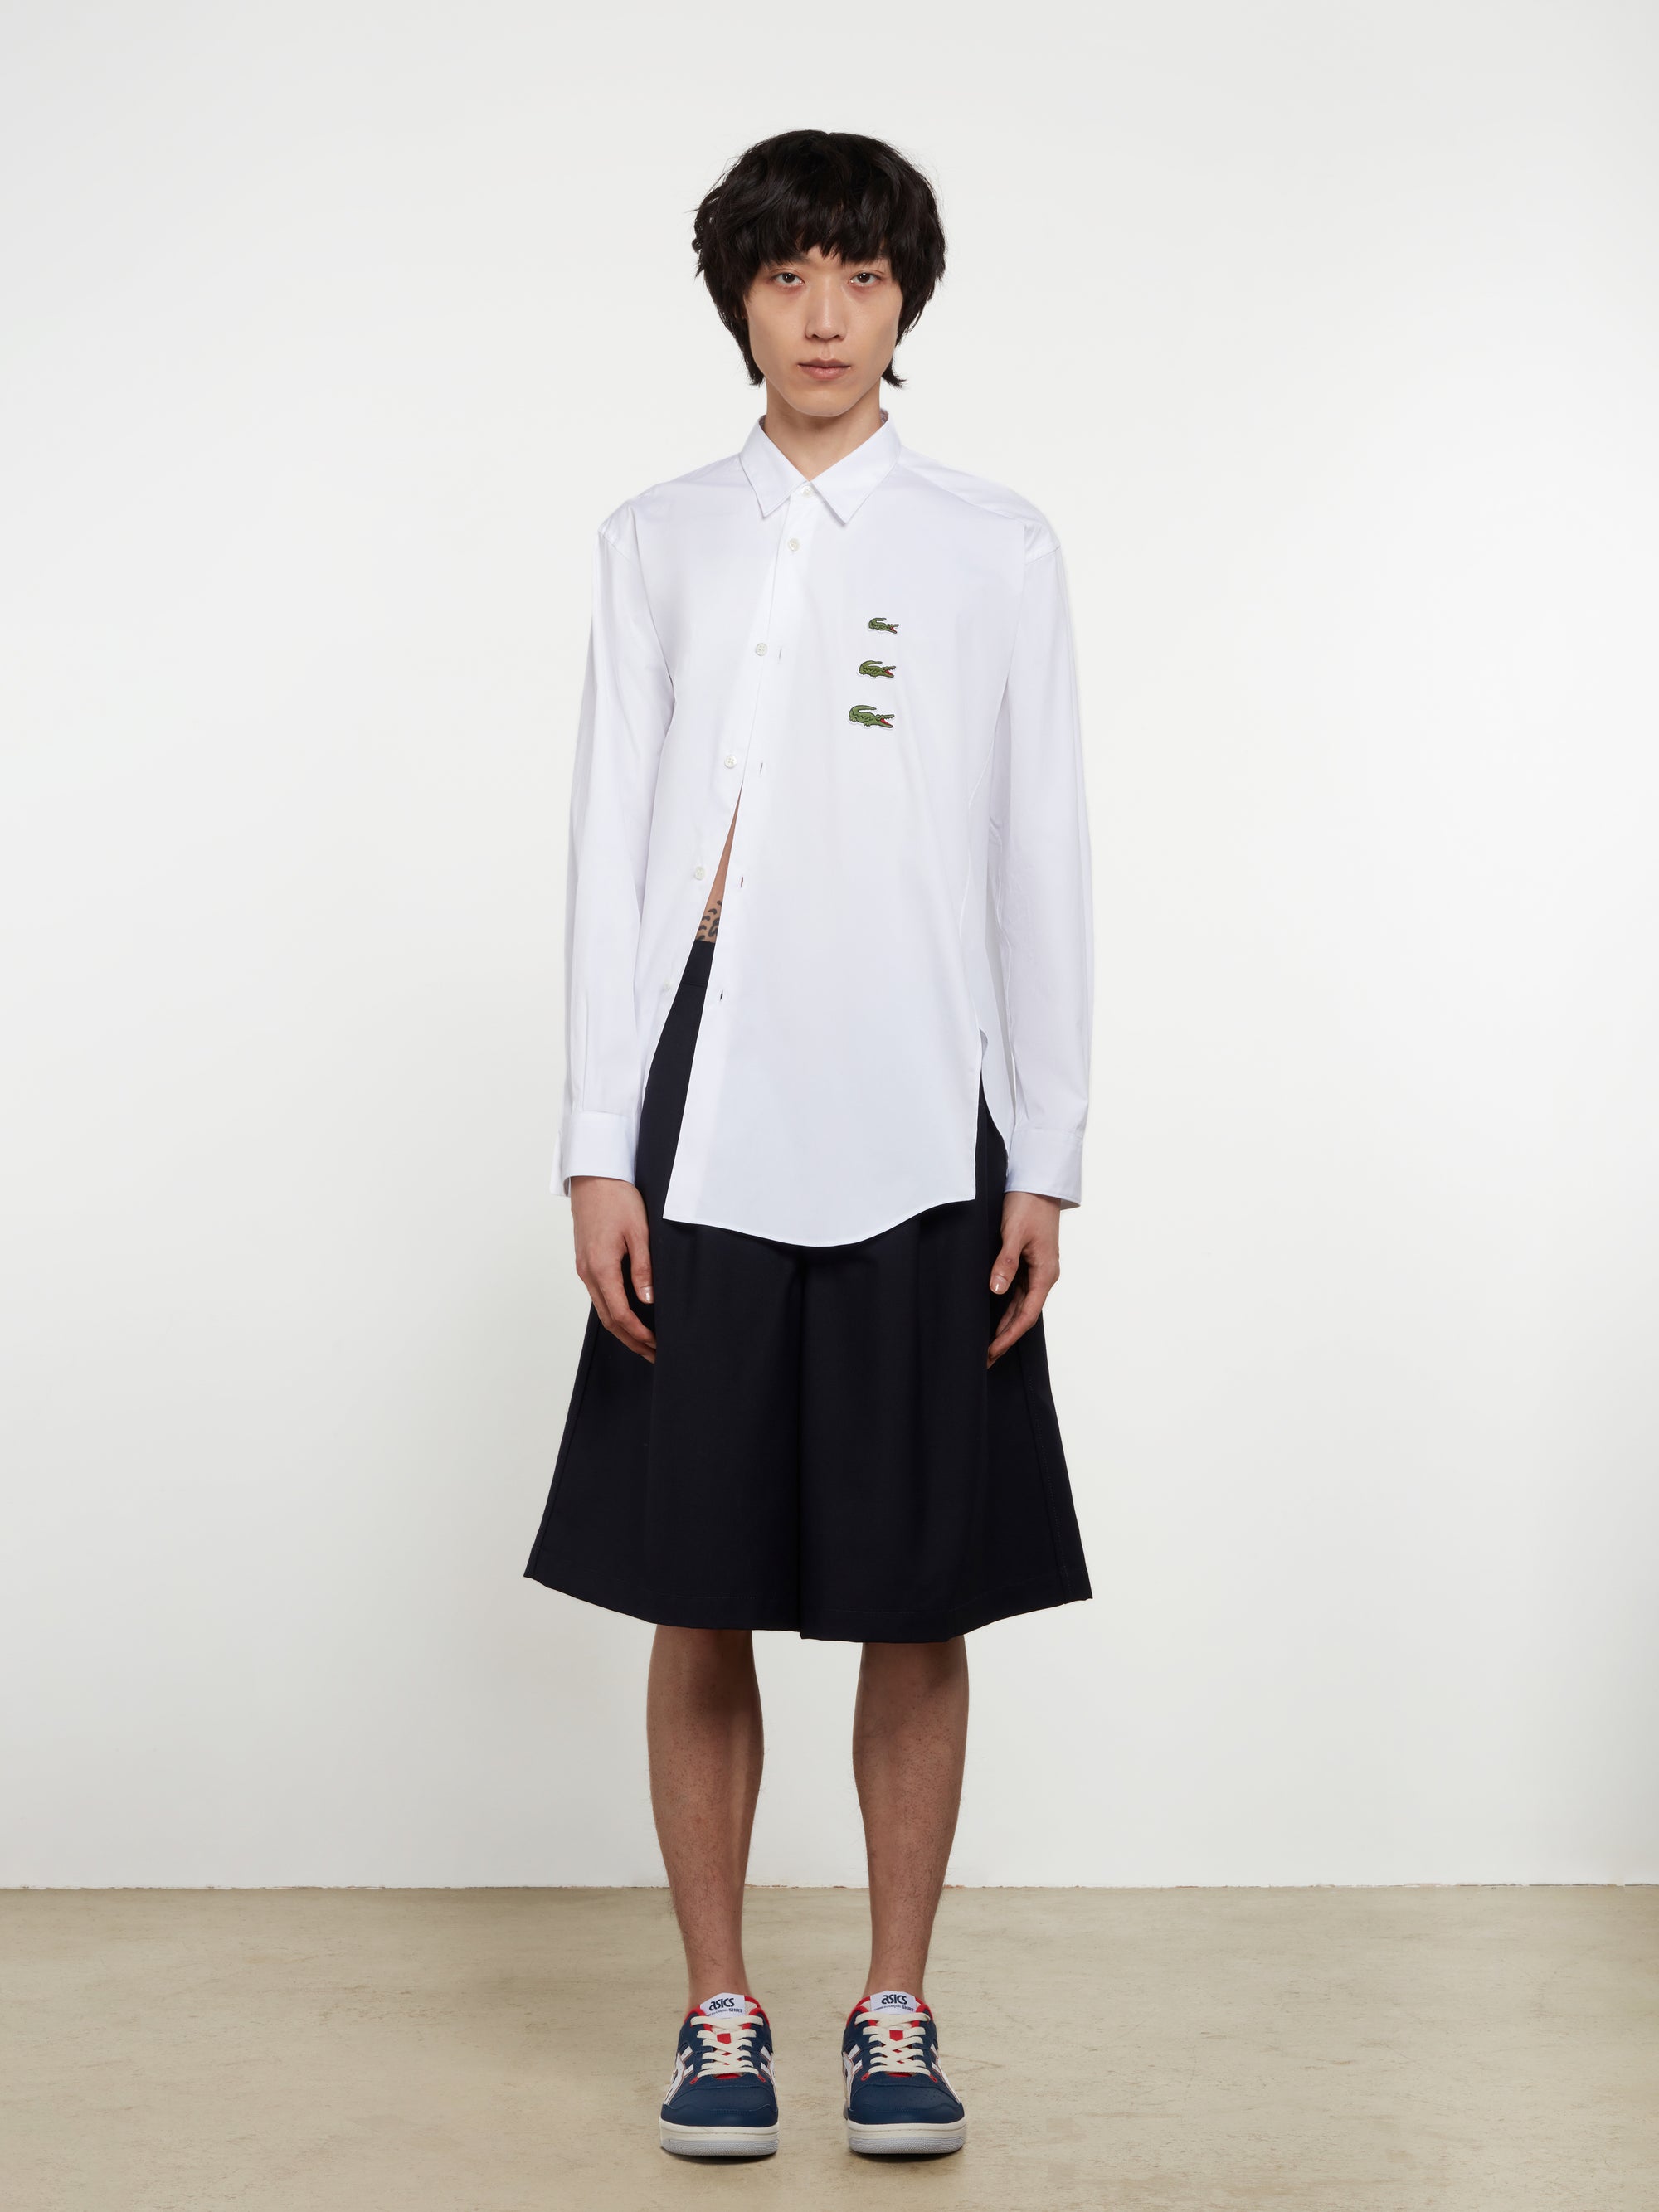 CDG Shirt - Lacoste Men’s Asymmetric Shirt - (White) view 4